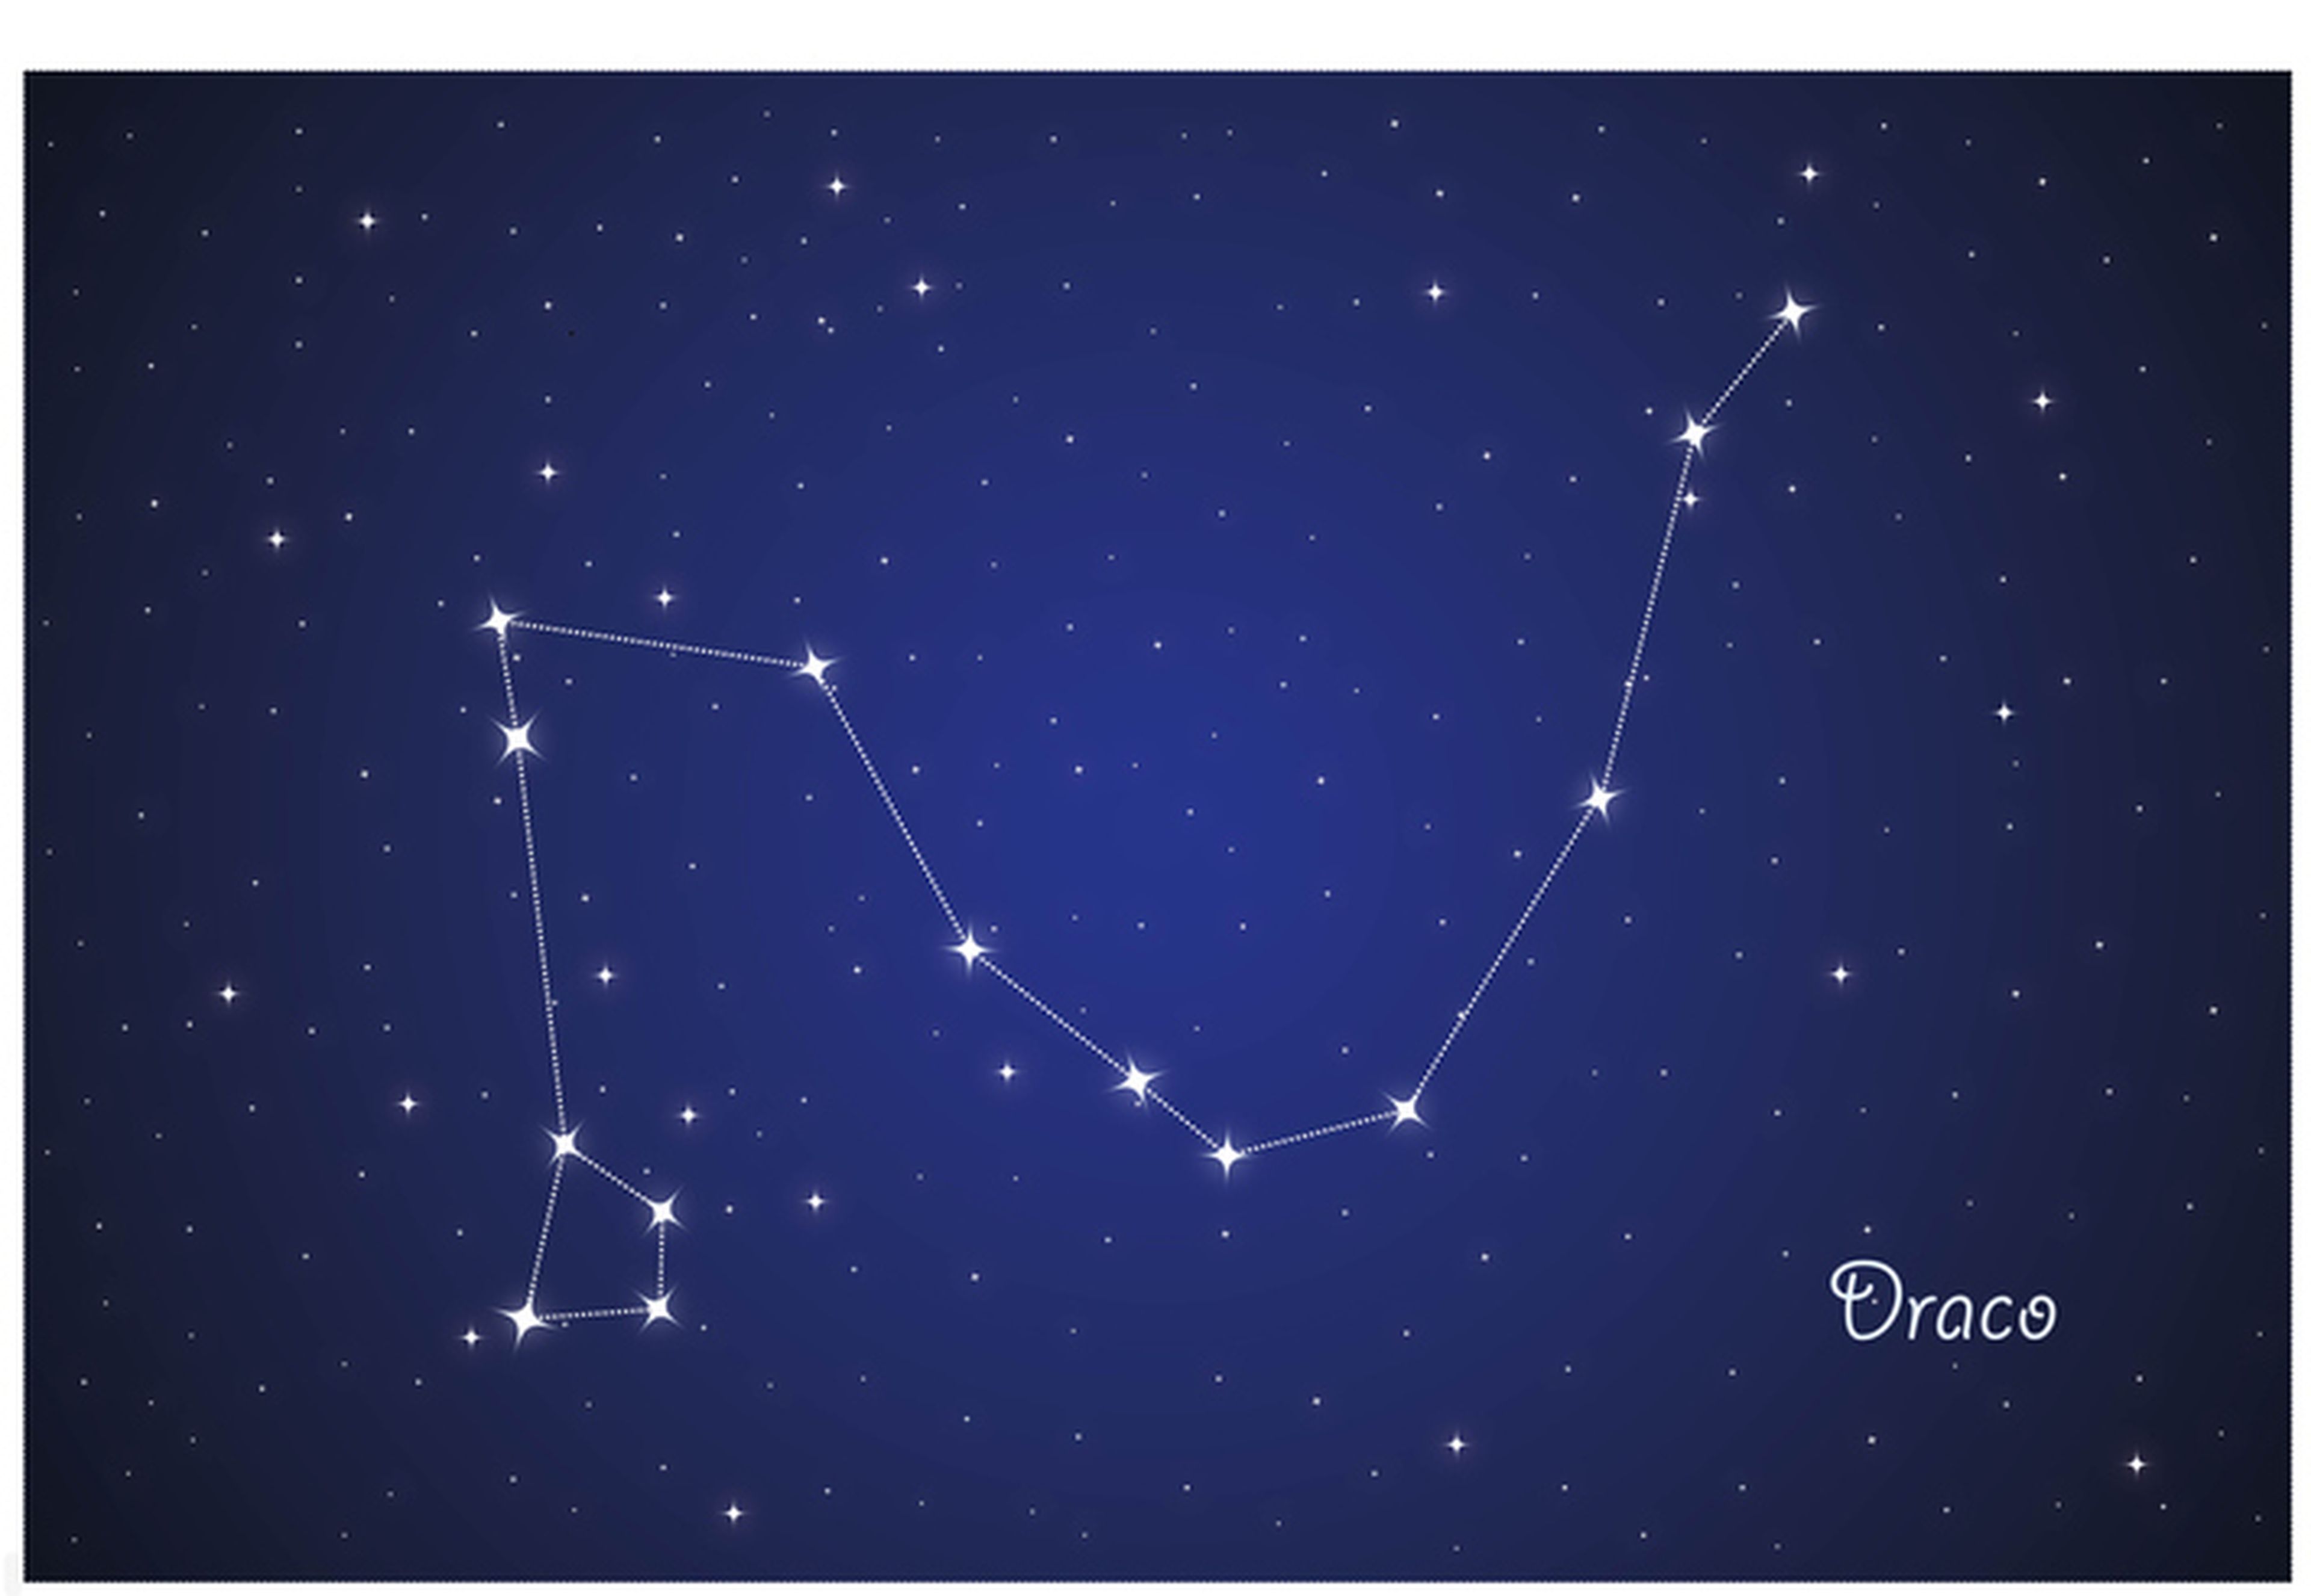 Constelación de Draco